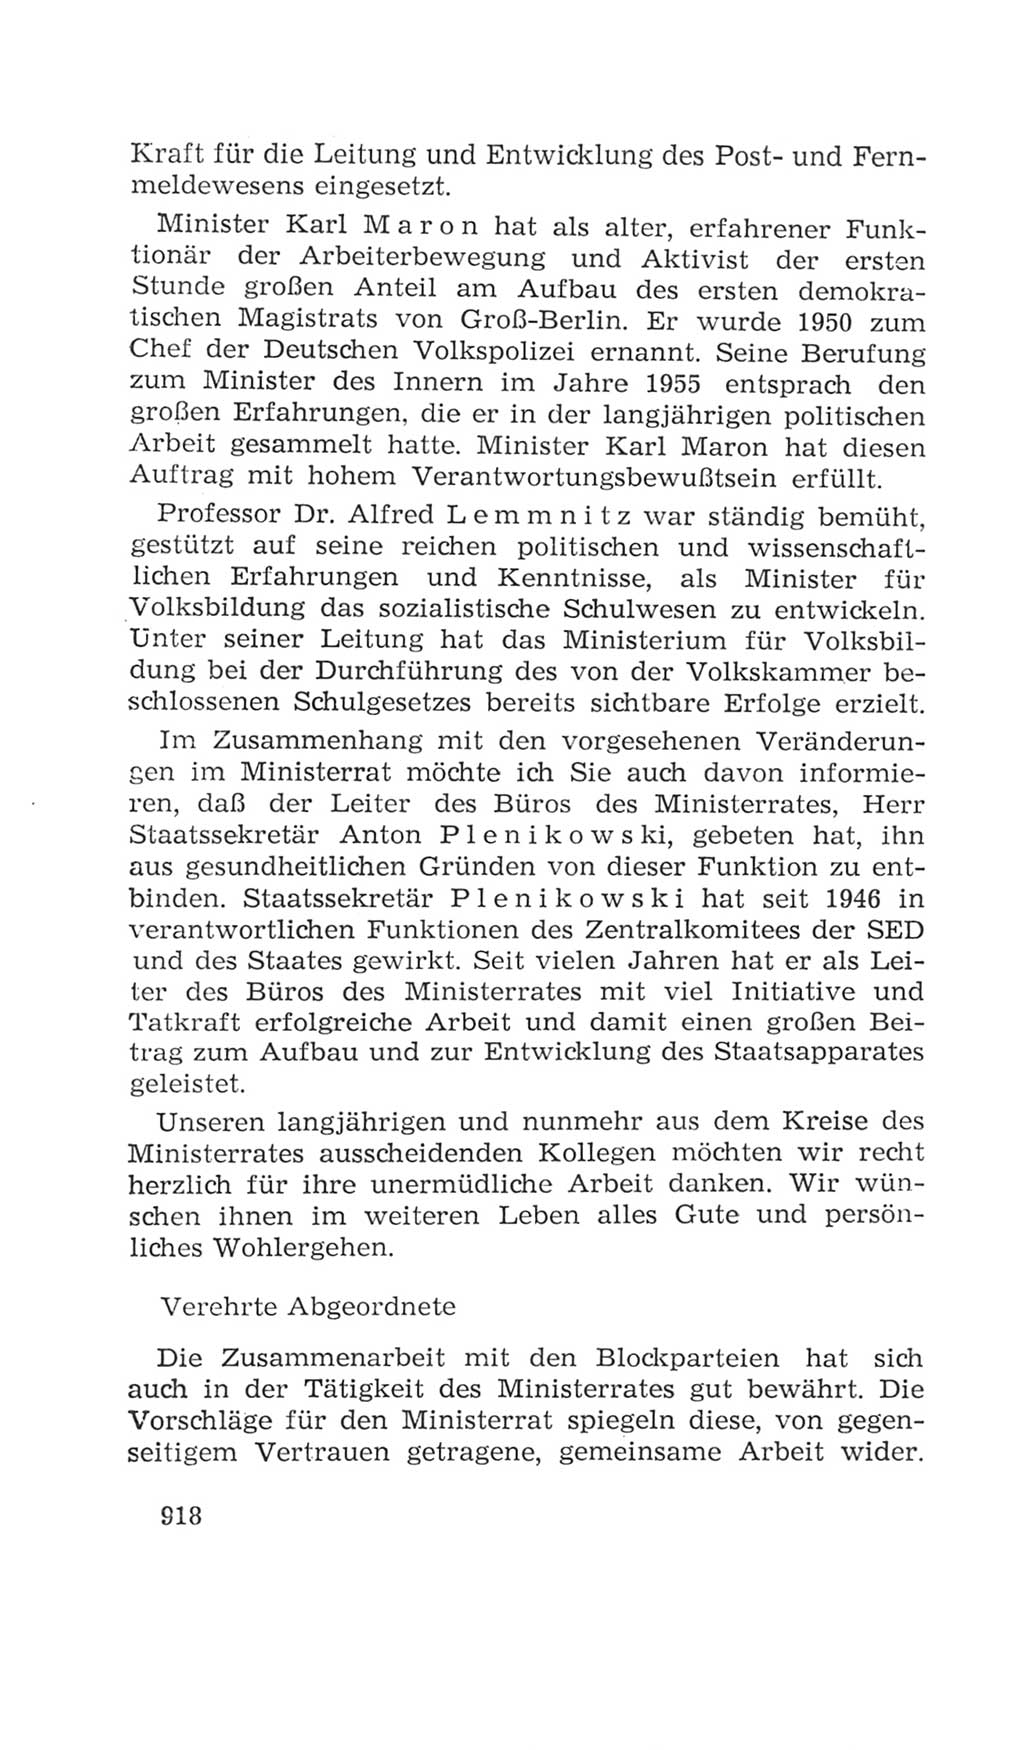 Volkskammer (VK) der Deutschen Demokratischen Republik (DDR), 4. Wahlperiode 1963-1967, Seite 918 (VK. DDR 4. WP. 1963-1967, S. 918)